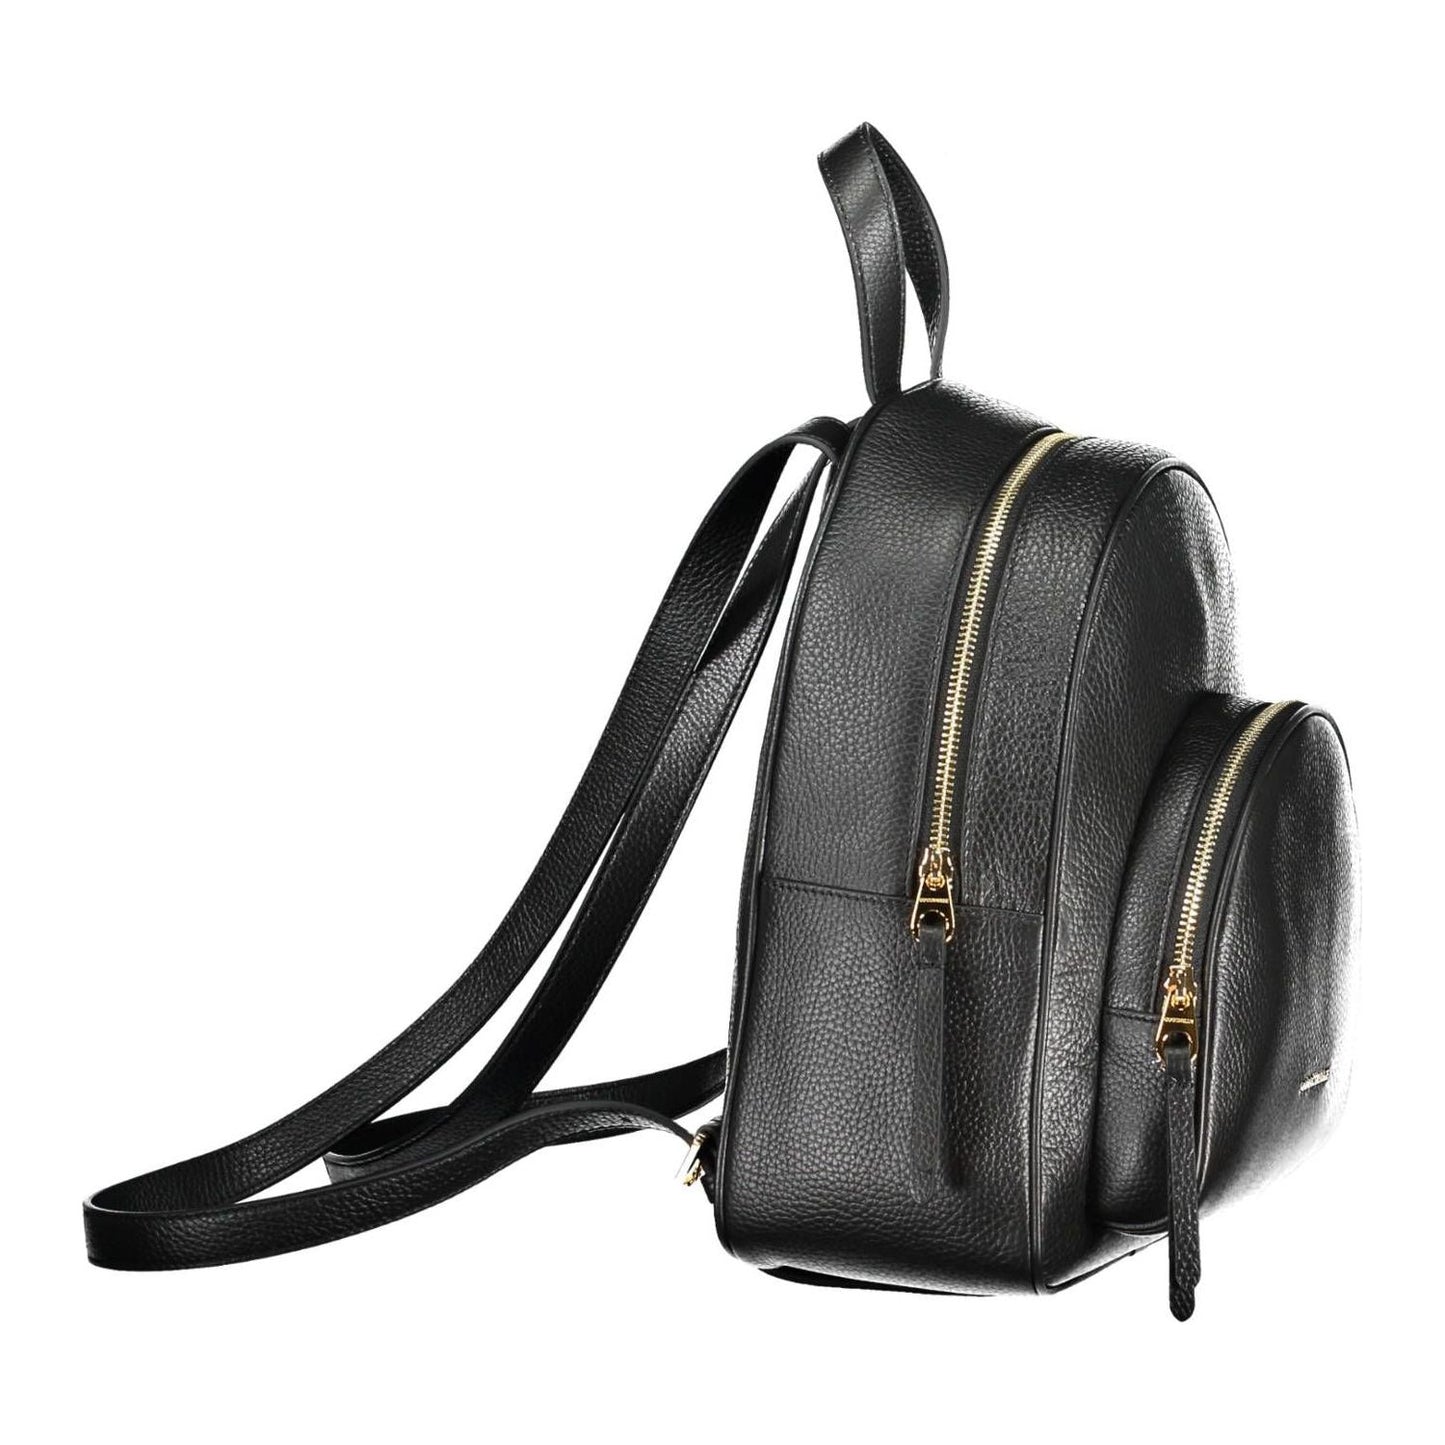 Coccinelle Elegant Black Leather Backpack elegant-black-leather-backpack